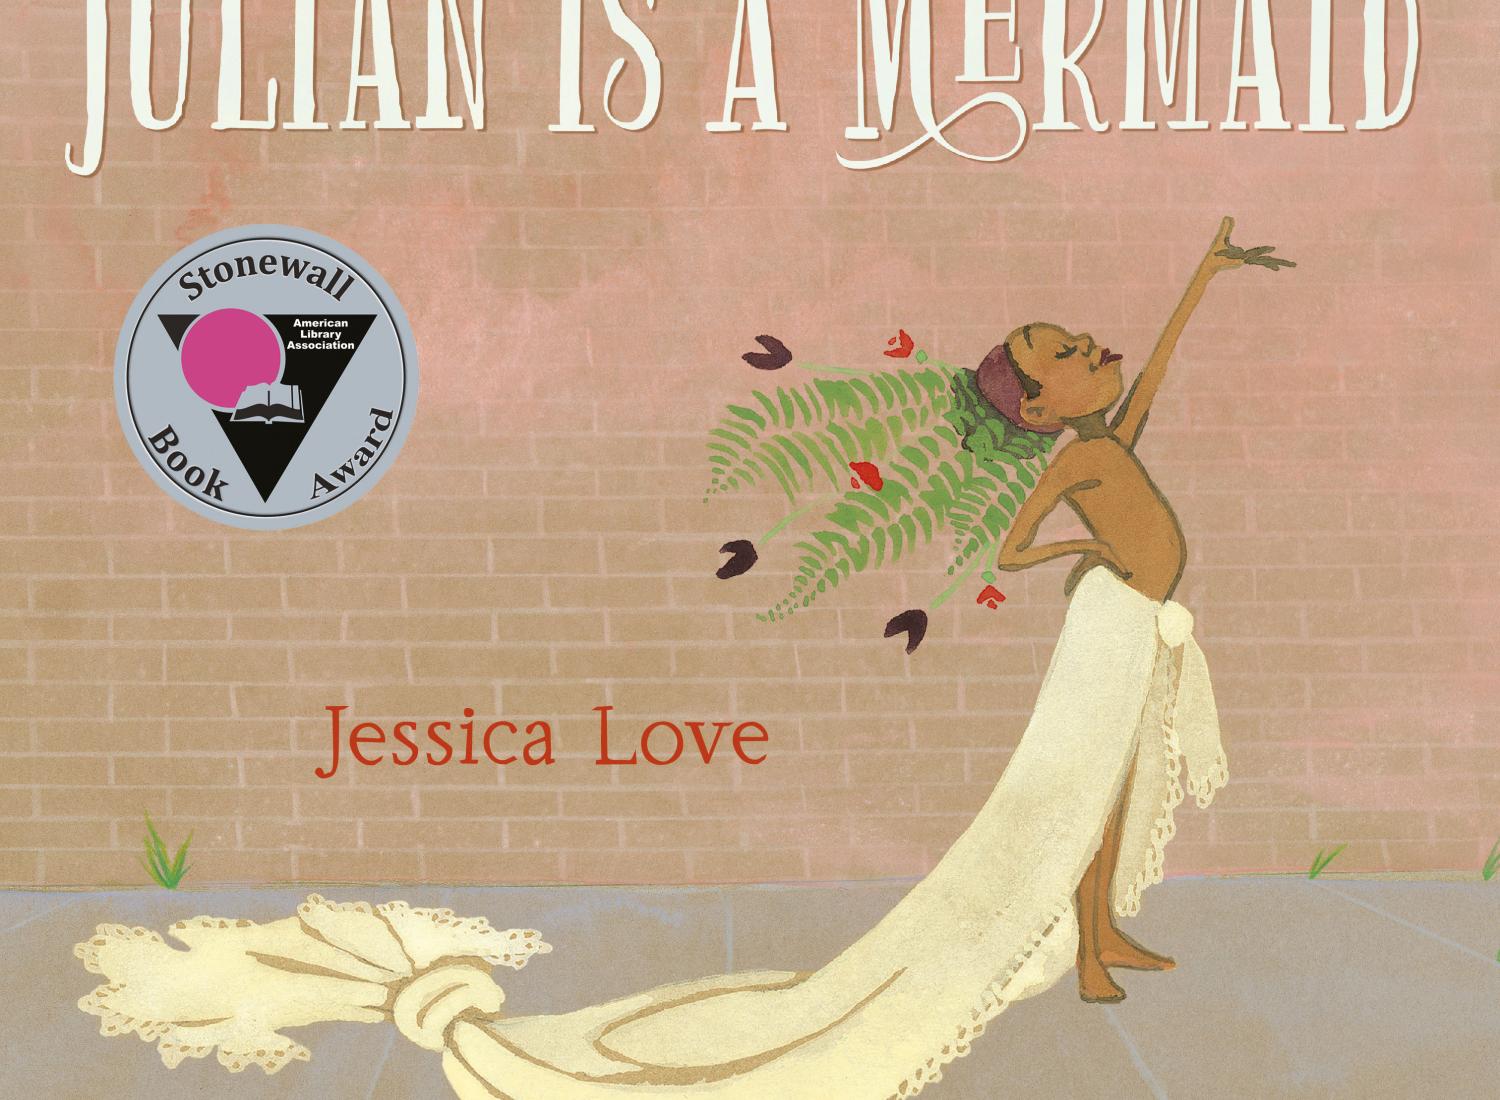 Une image de la couverture de Julián est une sirène représentant un enfant en costume de sirène avec le bras levé et le Stonewall Book Award.